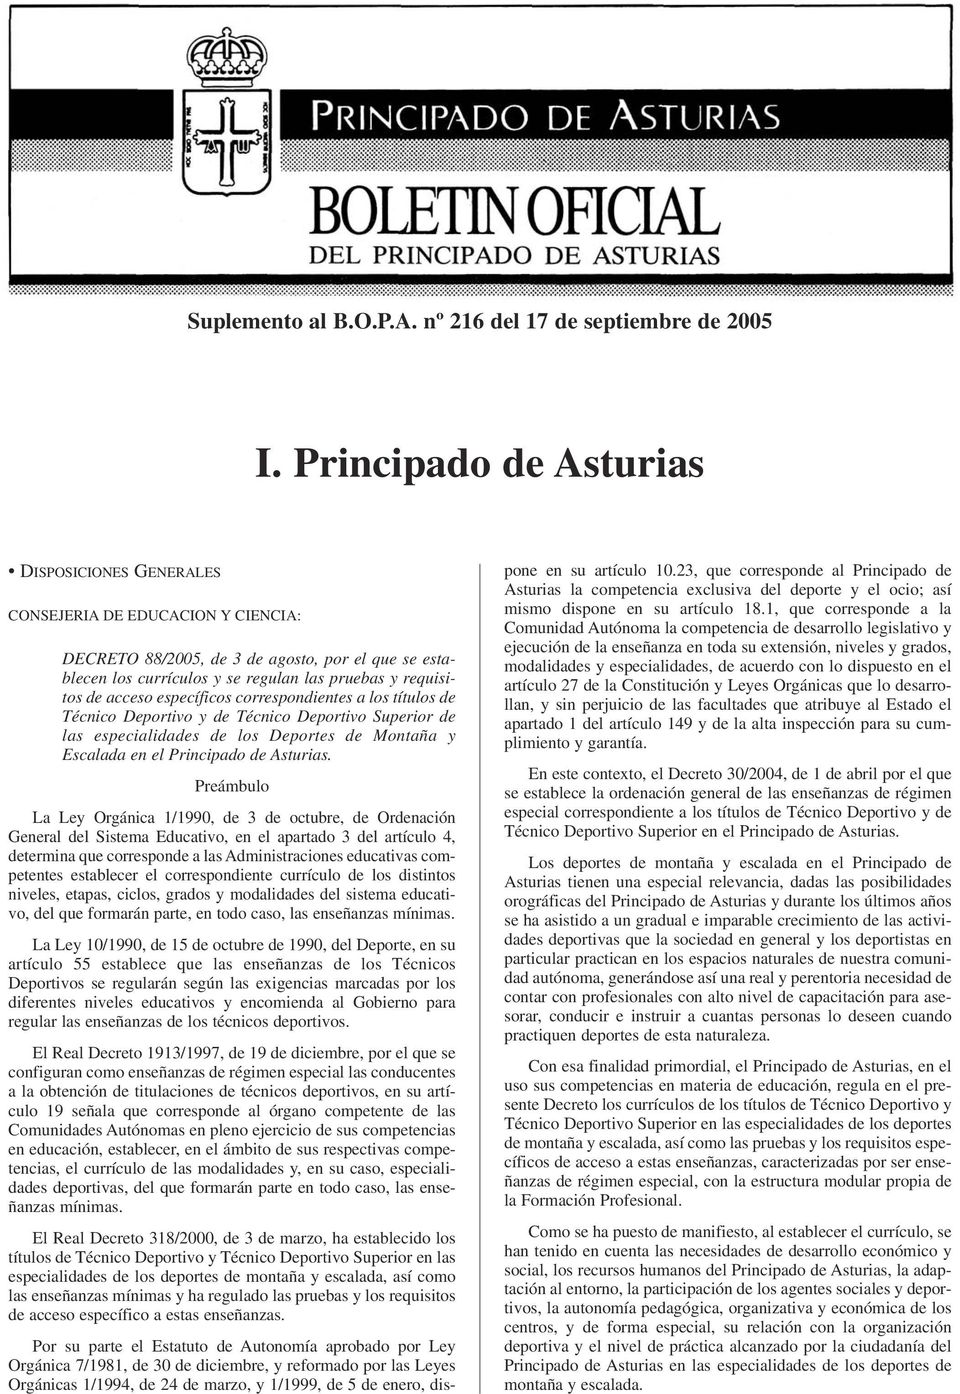 acceso específicos correspondientes a los títulos de Técnico Deportivo y de Técnico Deportivo Superior de las especialidades de los Deportes de Montaña y Escalada en el Principado de Asturias.